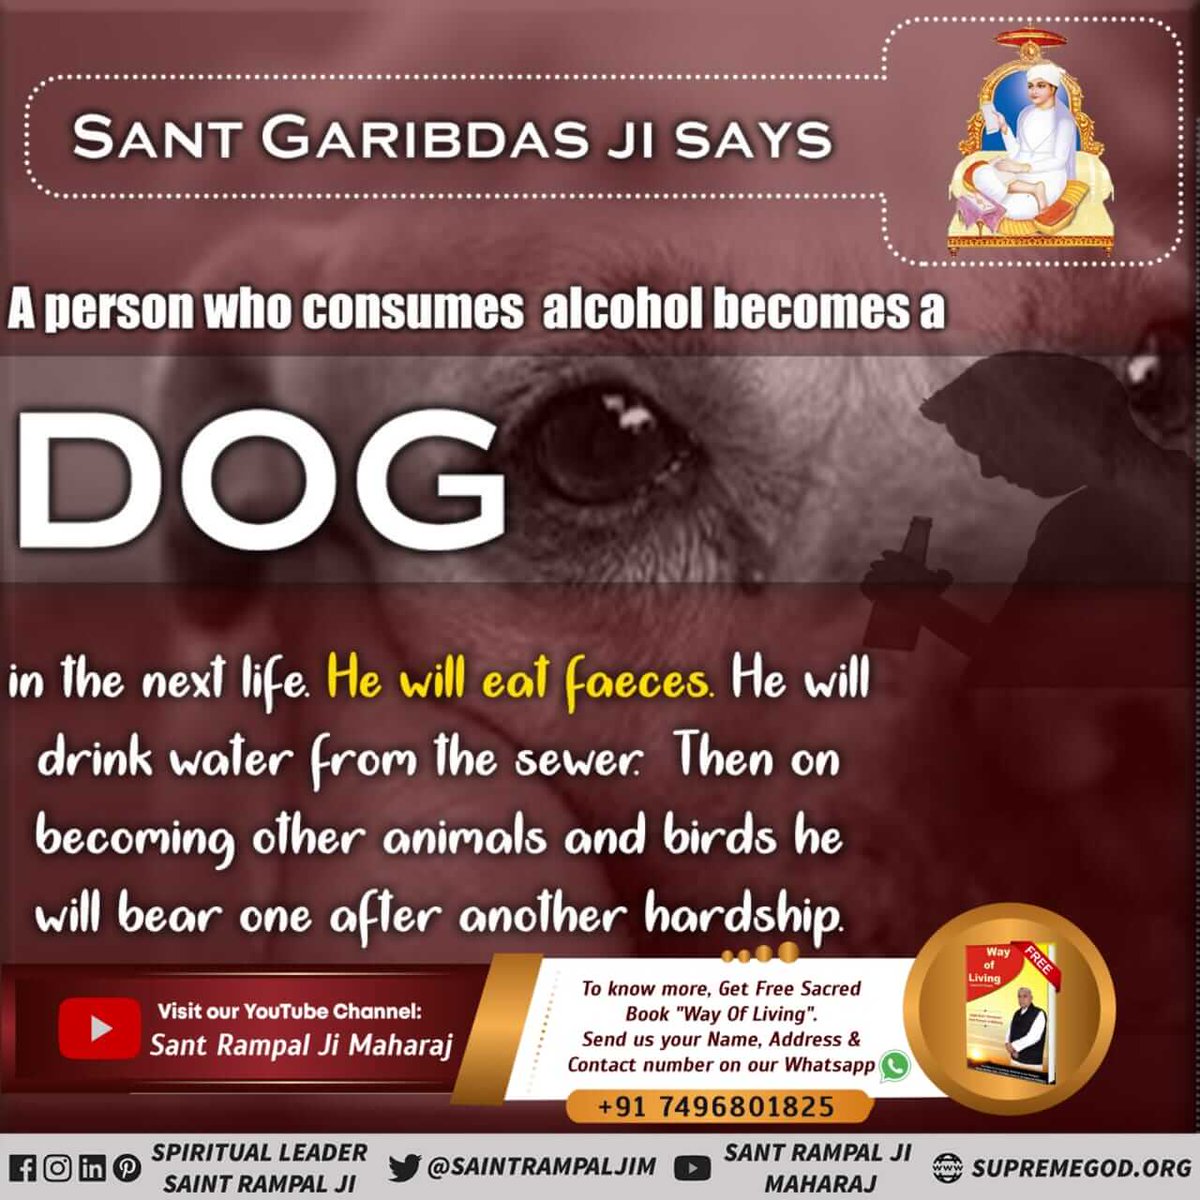 #नशा_एकअभिषापहै_कैसे_मुक्तिहो
 शराब पीने वाला व्यक्ति अगले जन्म में कुत्ता बनता है।  वह मल खाएगा.  वह नाली का गंदा पानी पिएगा.  फिर अन्य पशु-पक्षी बनकर एक के बाद एक कष्ट सहेगा।
 नशा मुक्ति के लिये अवश्य देखें साधना टीवी  7:30 pm/daily 
 #GodMorningThursday